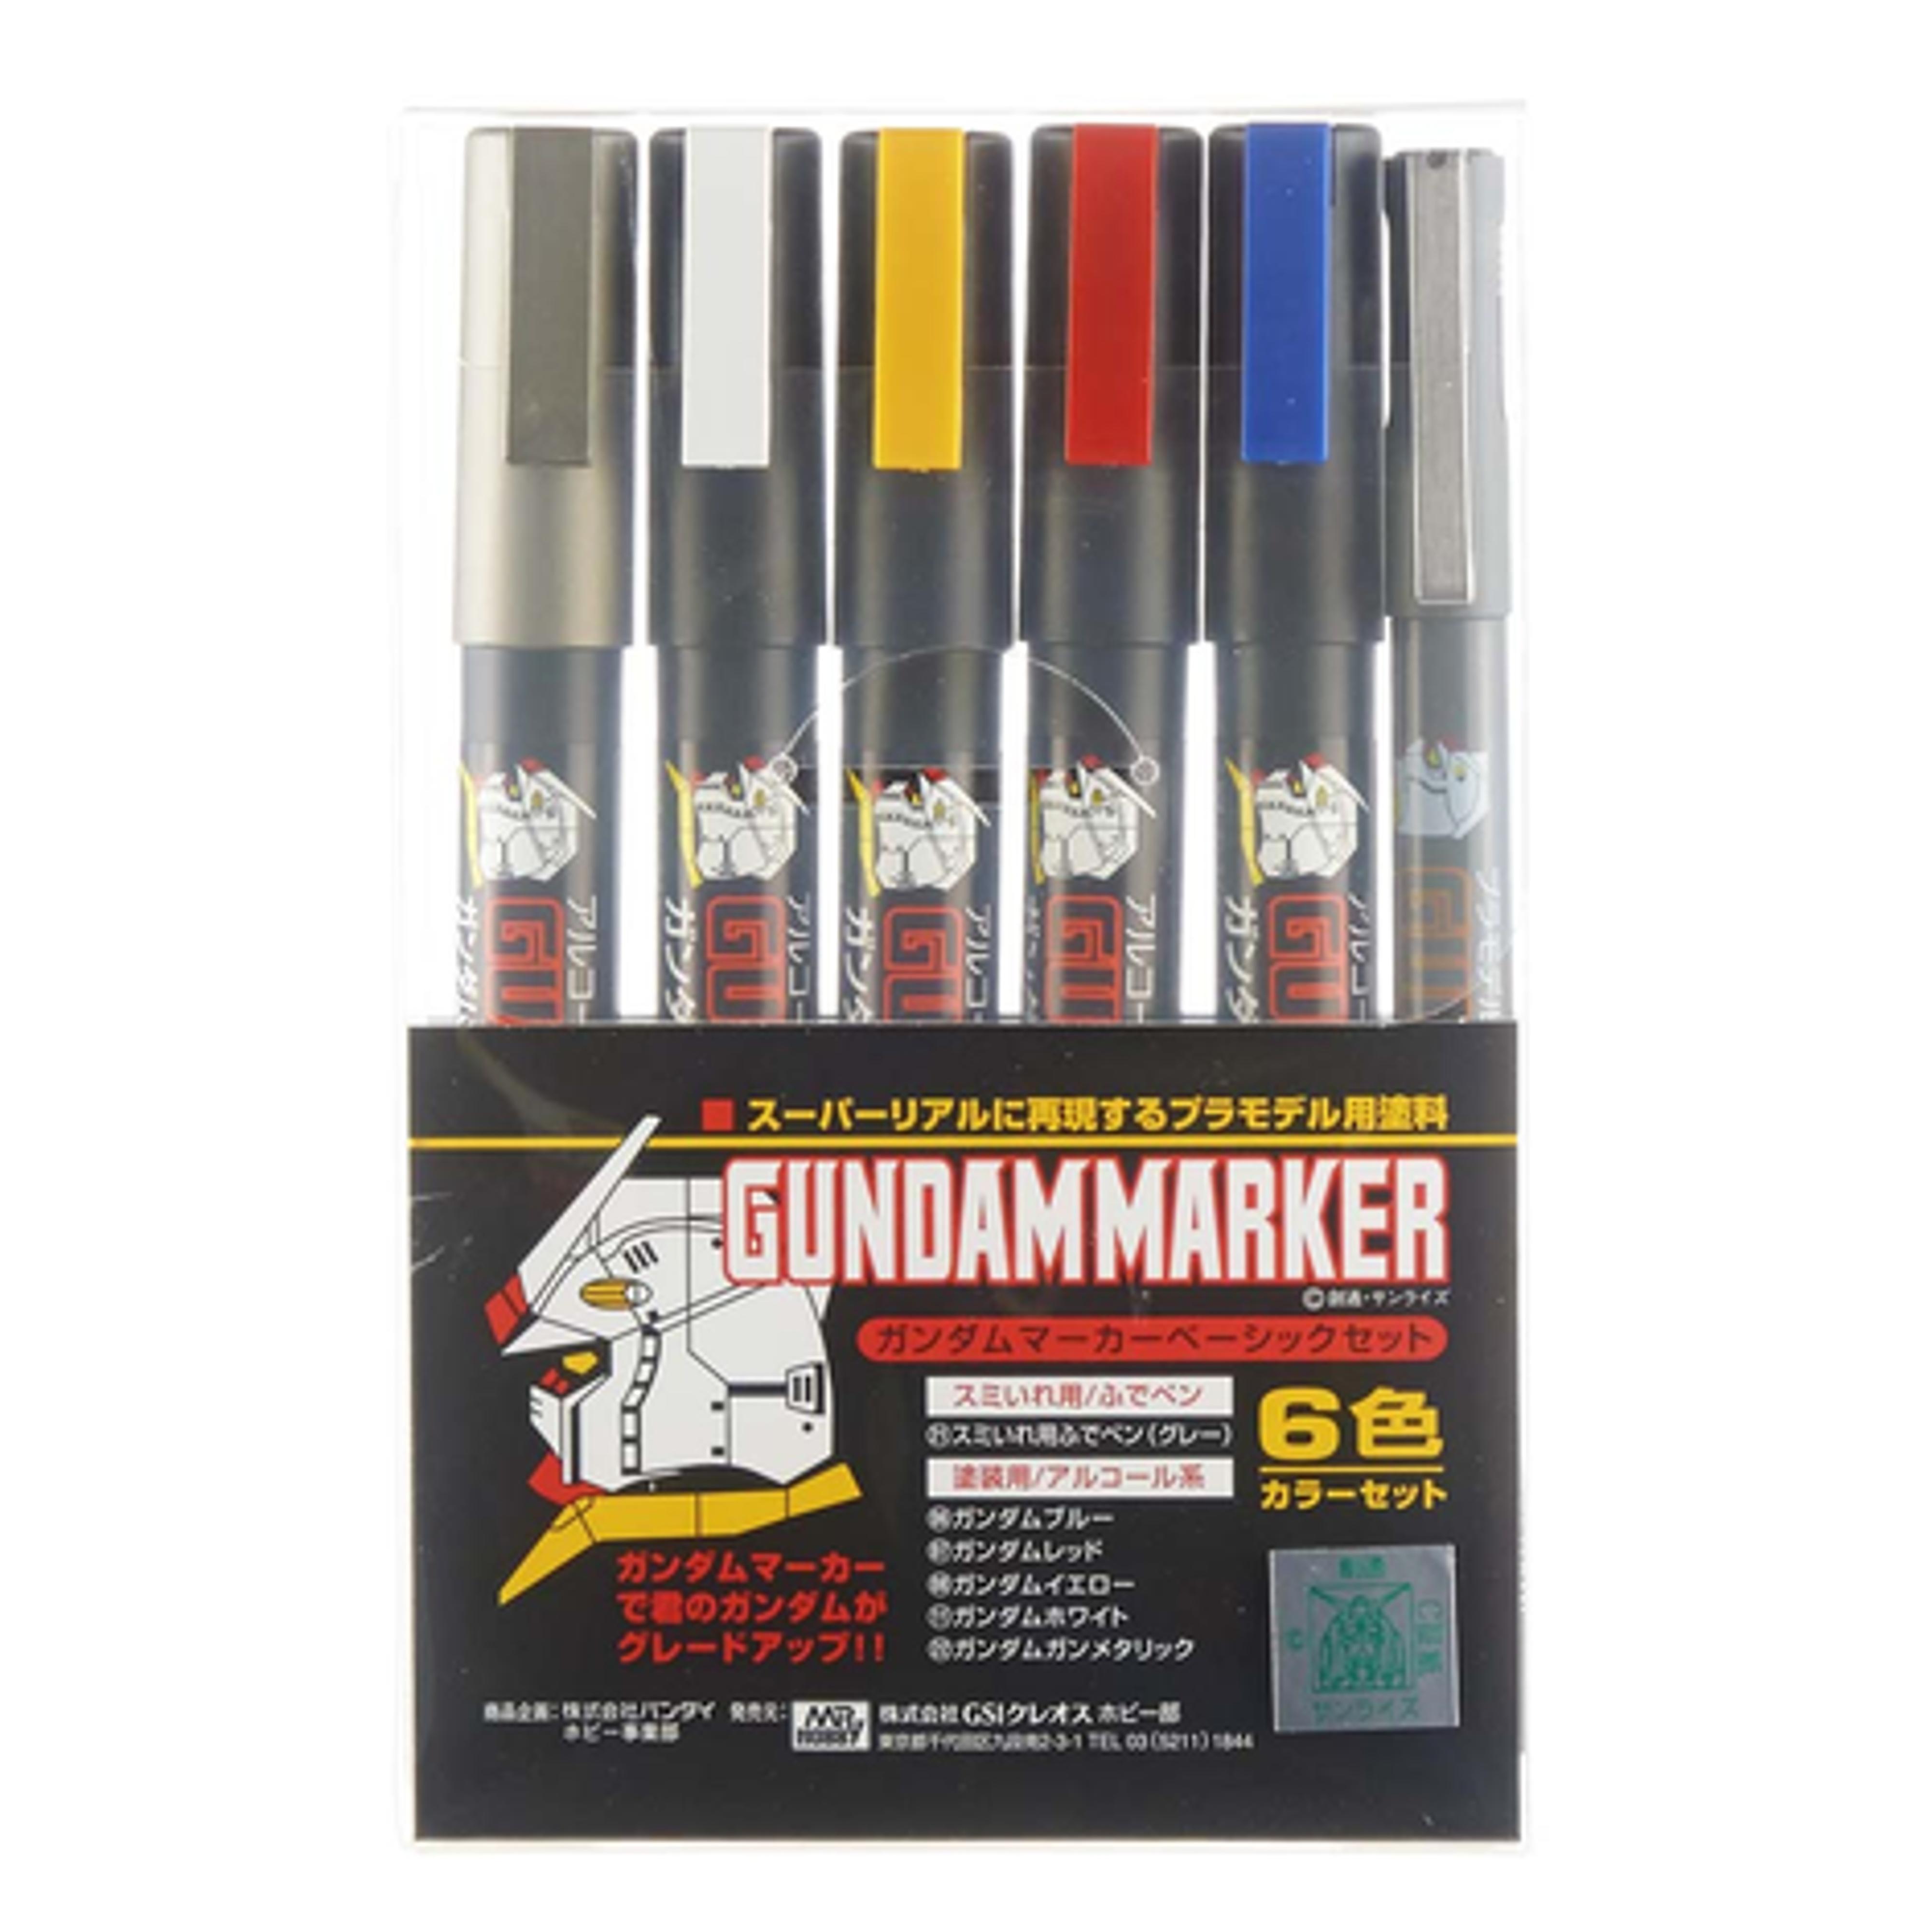 Gundam Marker Basic Set of 6 Paint Markers